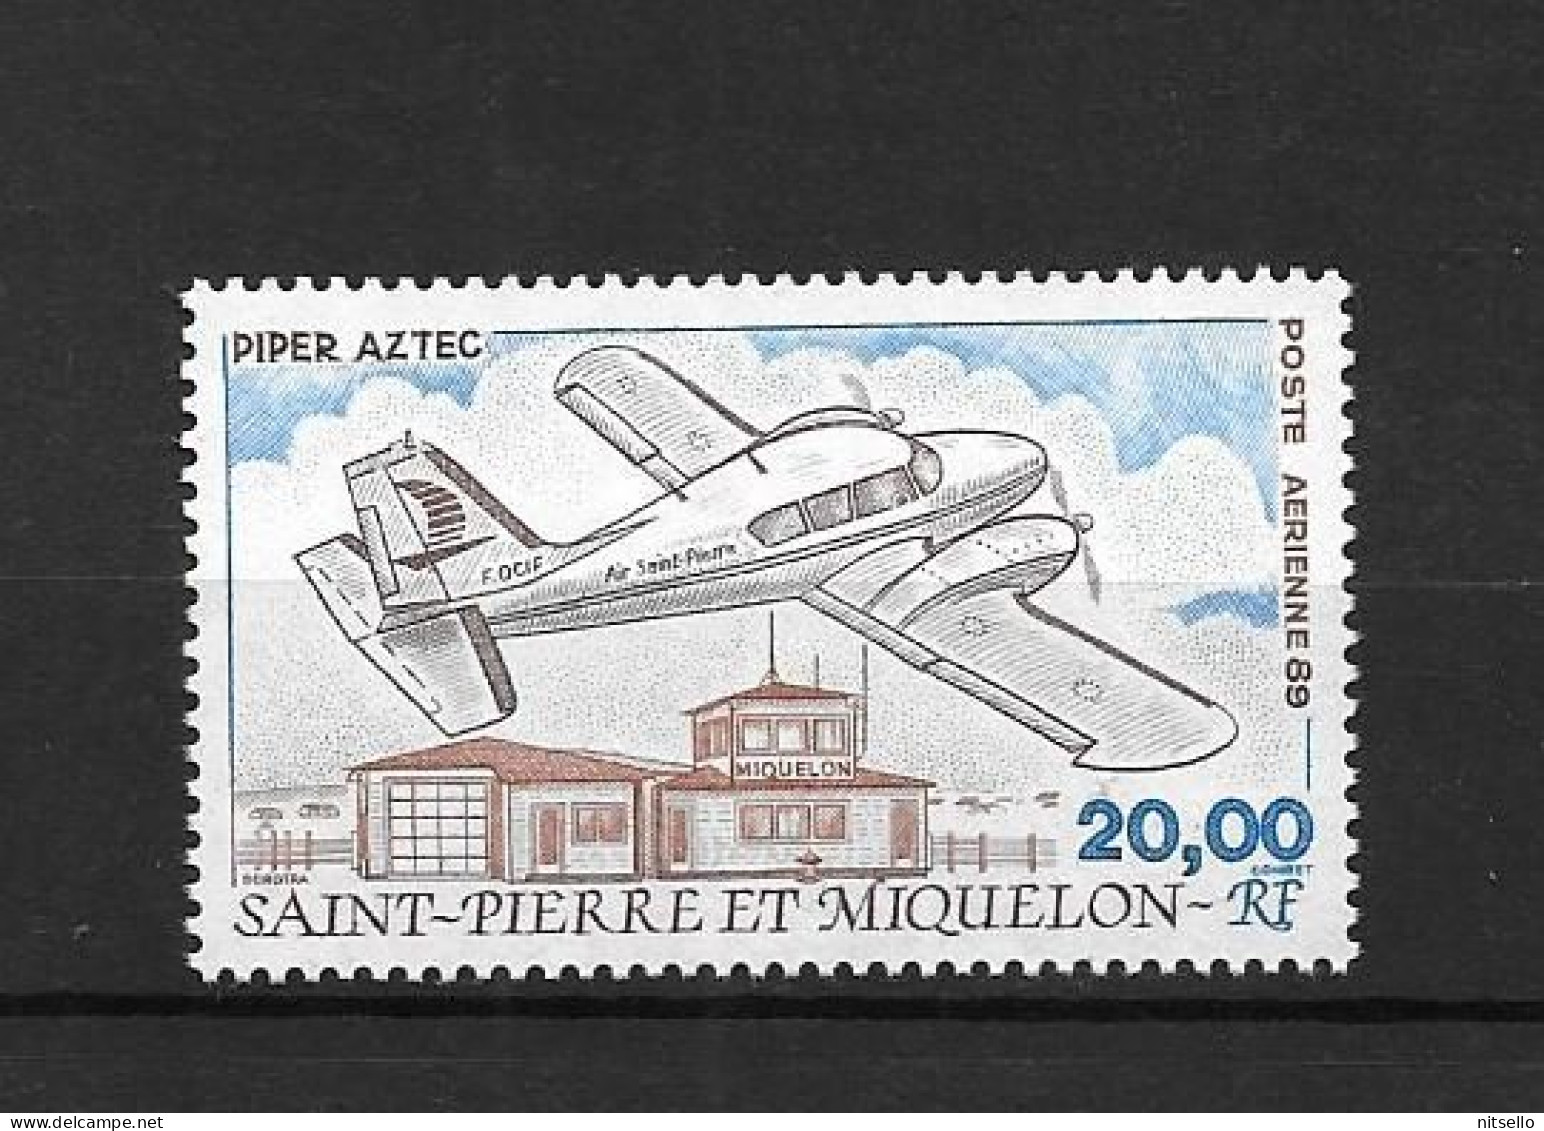 LOTE 1994 // (C150) SAINT PIERRE ET MIQUELON // YVERT Nº: PA 68 **MNH  ¡¡¡ LIQUIDATION - JE LIQUIDE - ANGEBOT !!! - Unused Stamps